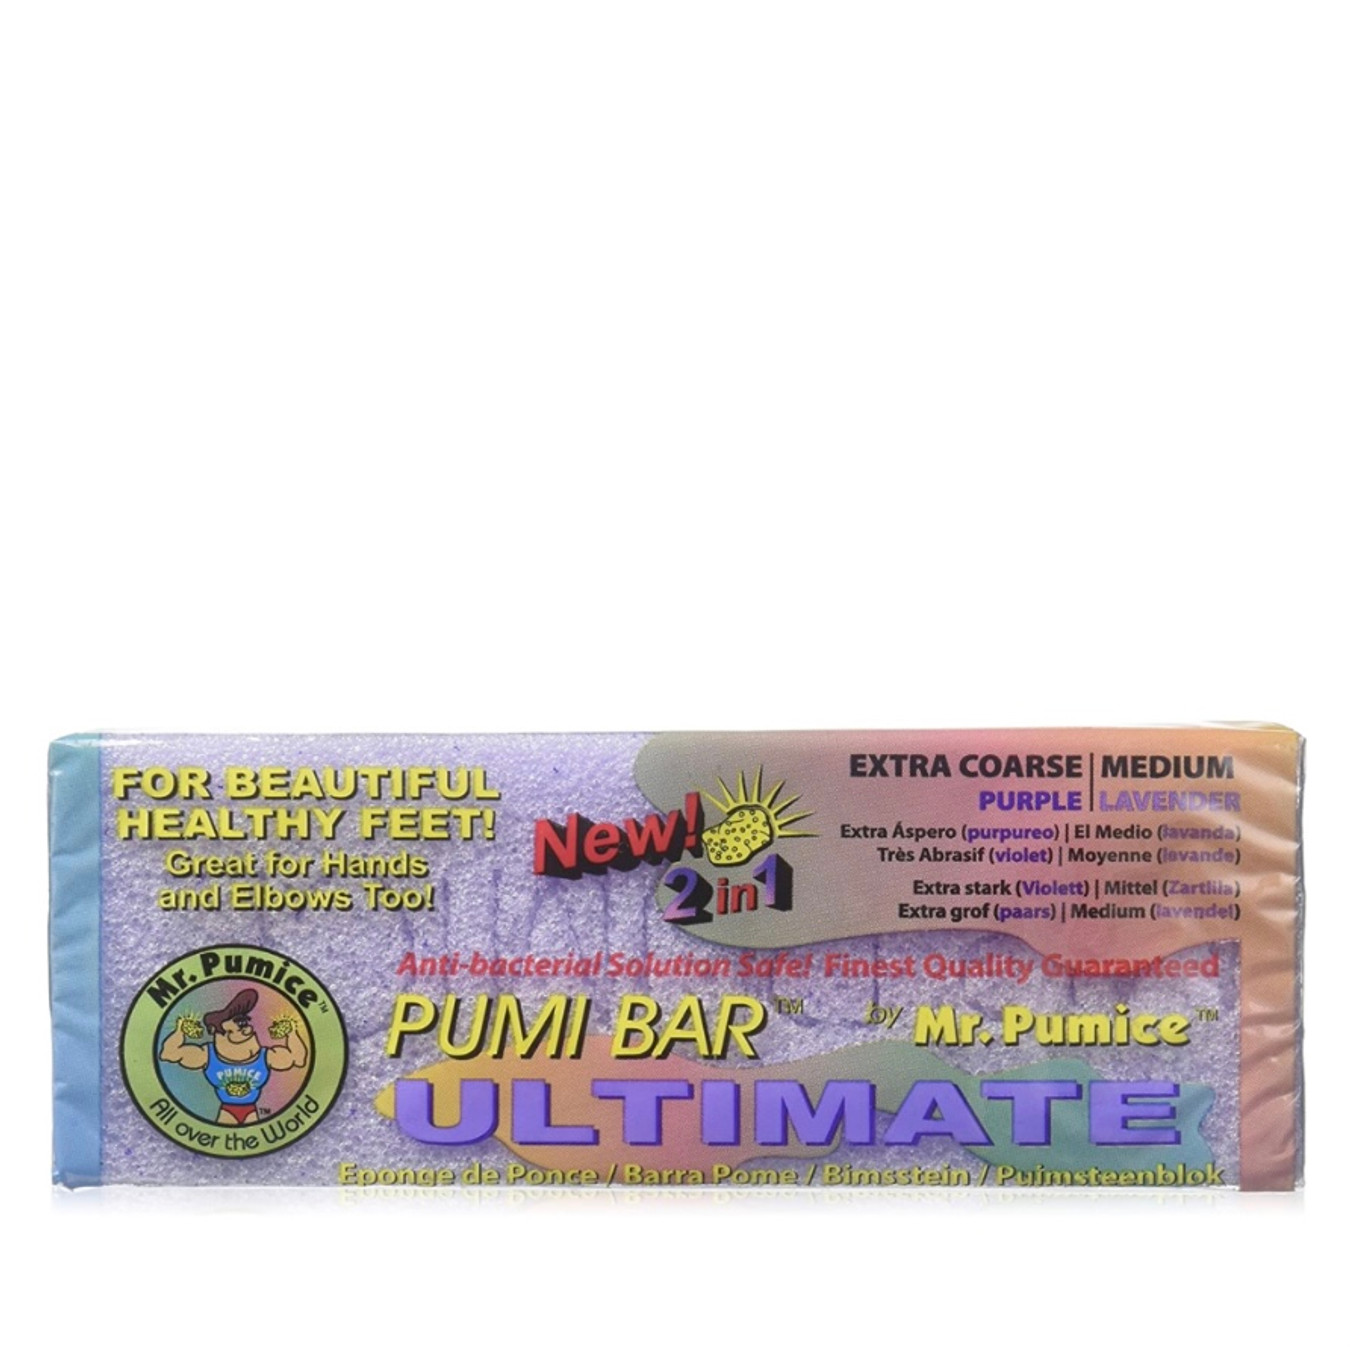 Mr. Pumice Pumi Bar 2 In 1 [Ultimate]